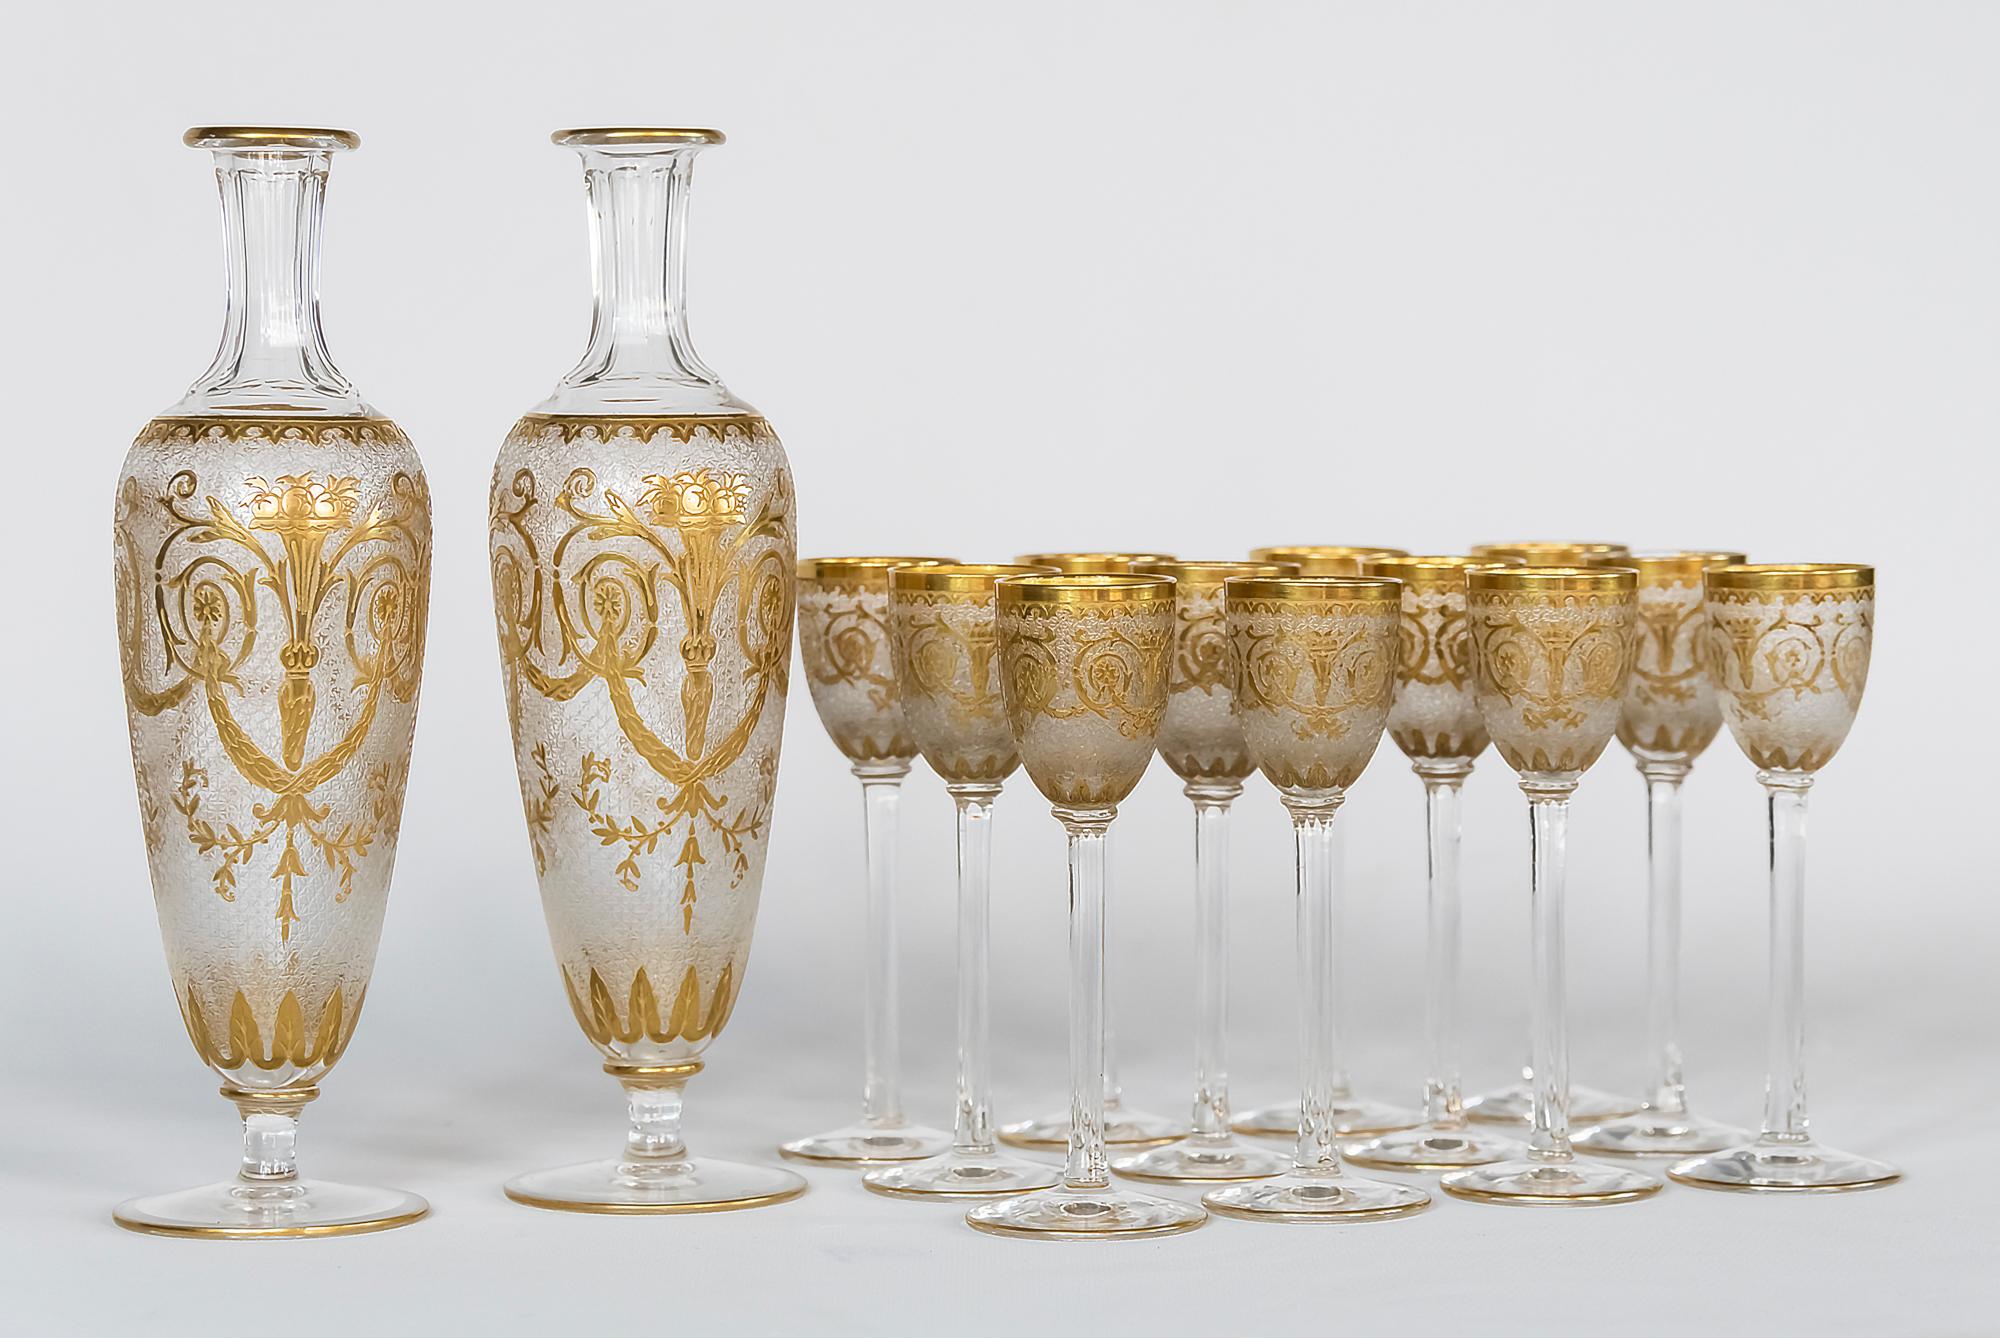 Service à liqueur ancien en cristal français Saint Louis taillé et dépoli, décoré d'ornements dorés.
Cet ensemble comprend 12 pièces de gobelets, 2 pièces de carafes (sans bouchon).

Très bon état ancien. 

 